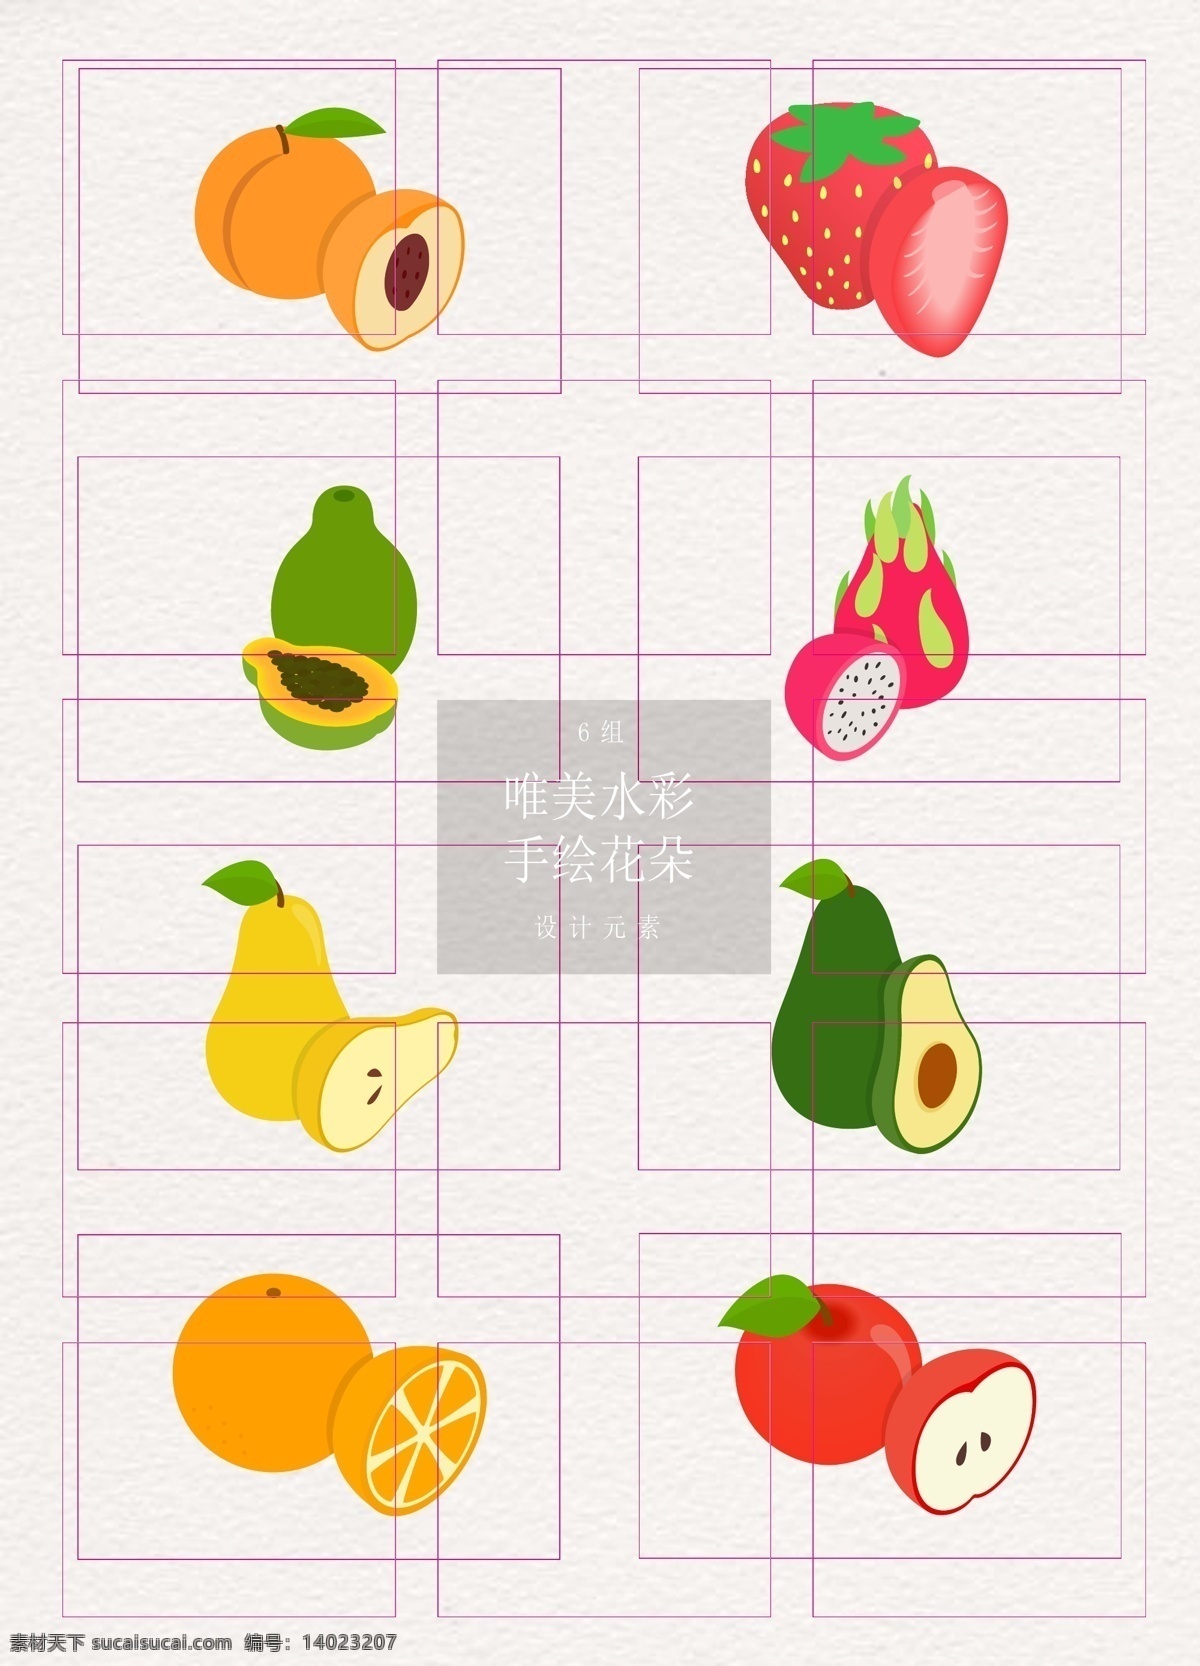 卡通 手绘 水果 切面 矢量图 草莓 橙子 苹果 水果元素 黄桃 木瓜 火龙果 水梨 牛油果